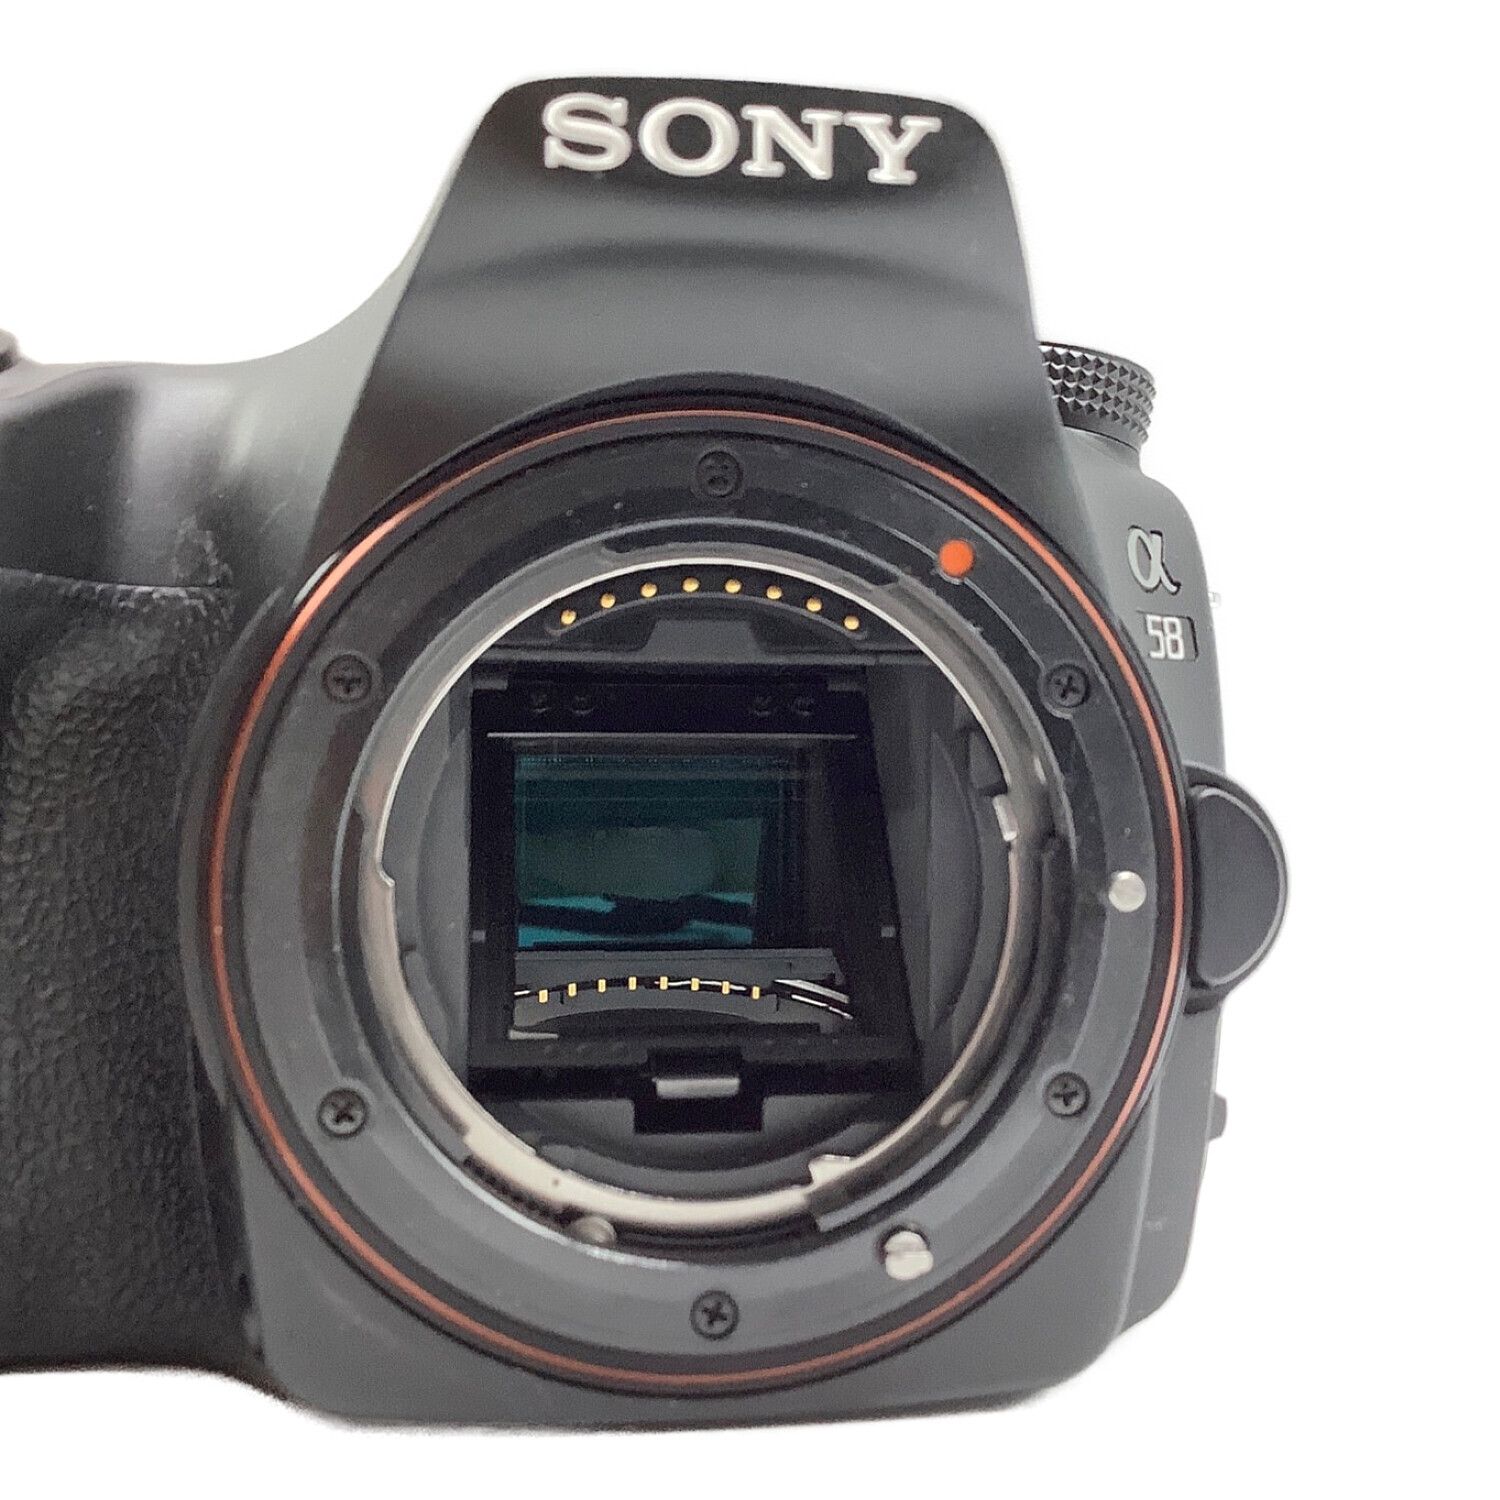 SONY (ソニー) デジタル一眼レフカメラ ズームレンズキット SLT-a58